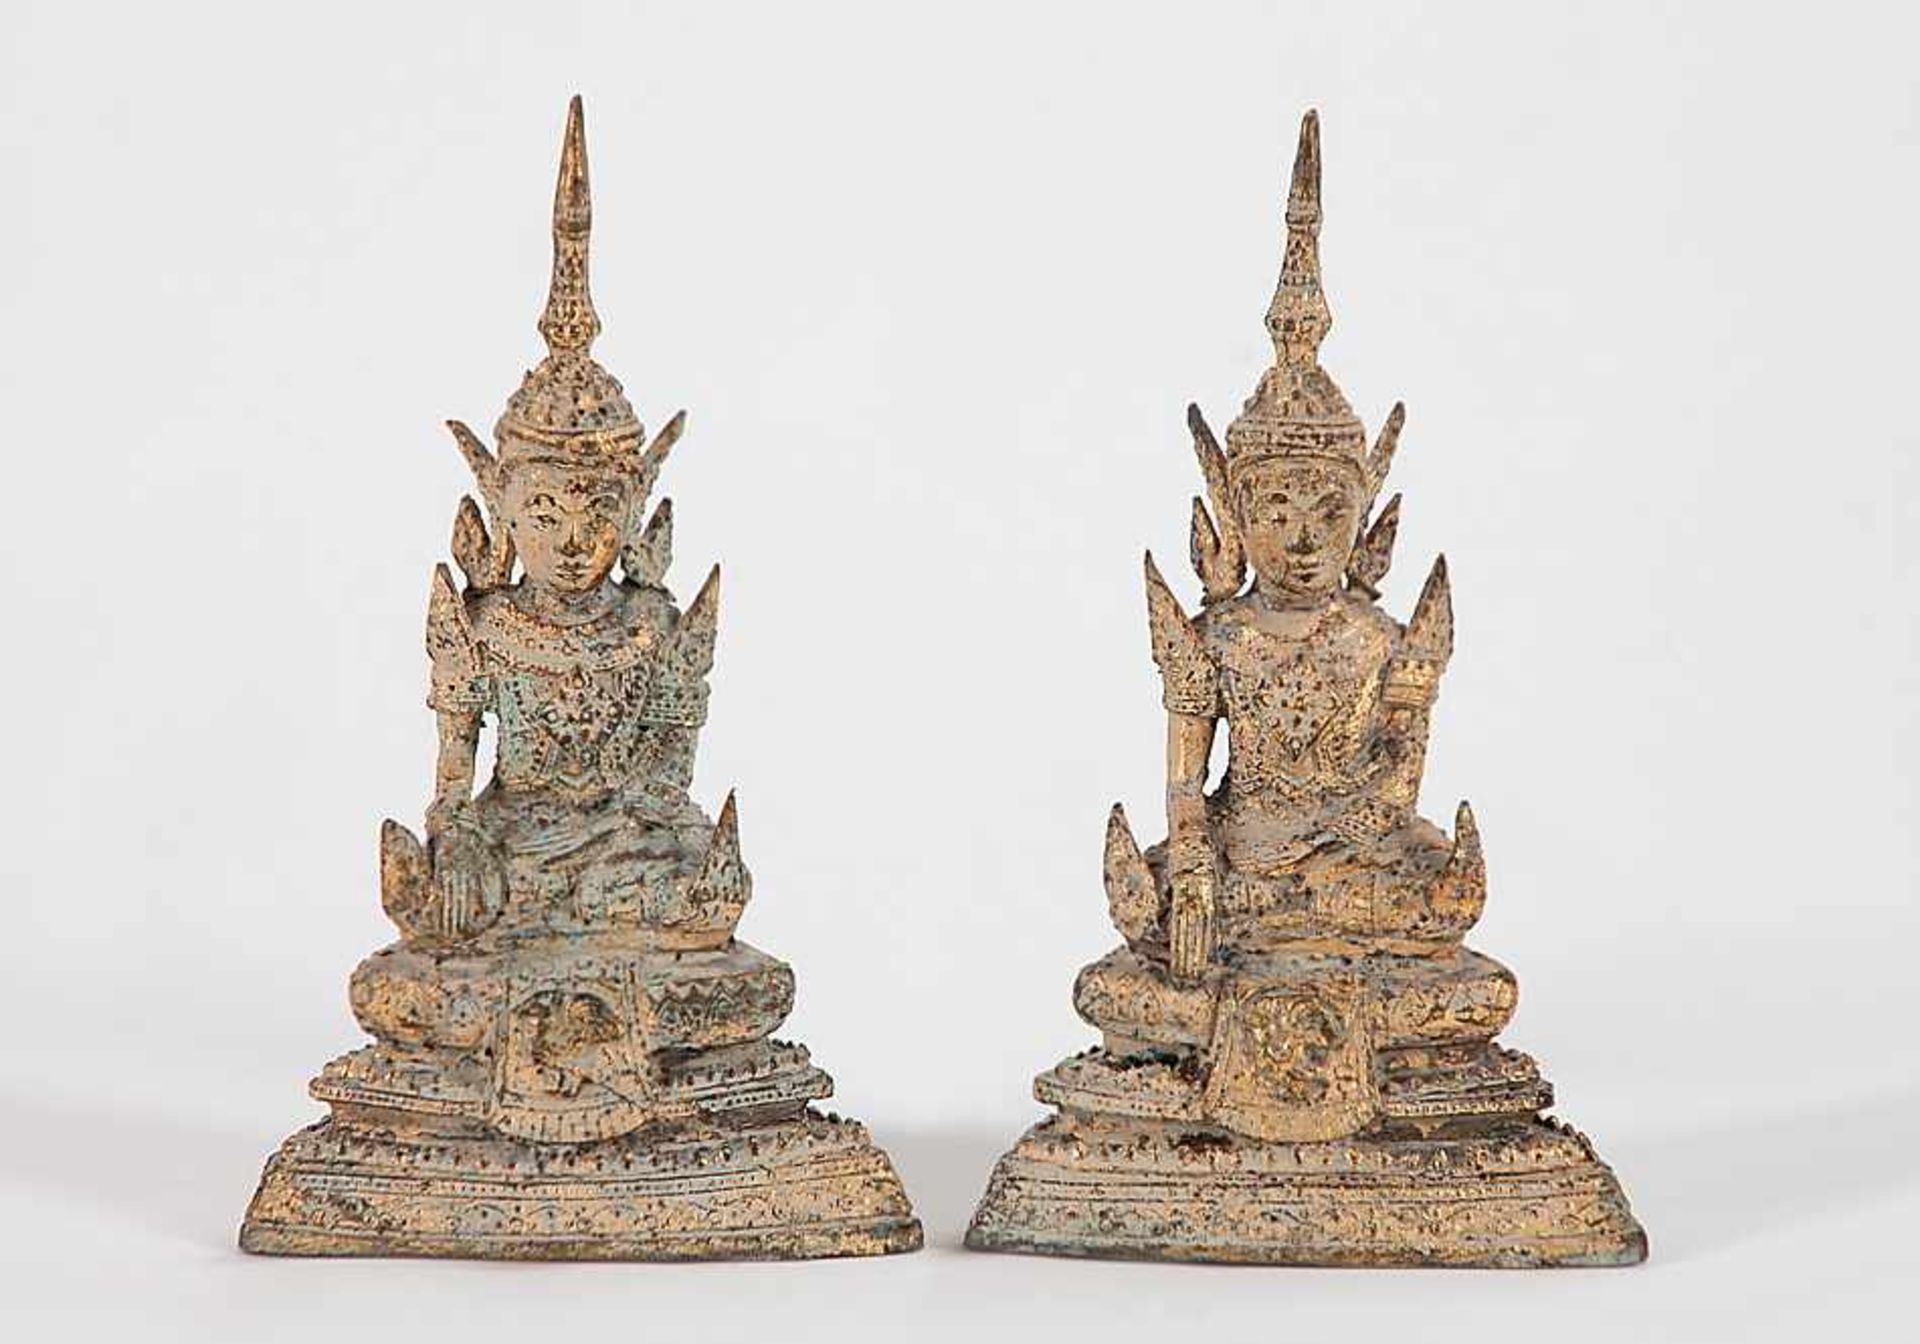 Zwei sitzende BuddhafigurenThailand. Hellgrau patiniertes Metall, Vergoldung. H 16,5 cm.€ 15